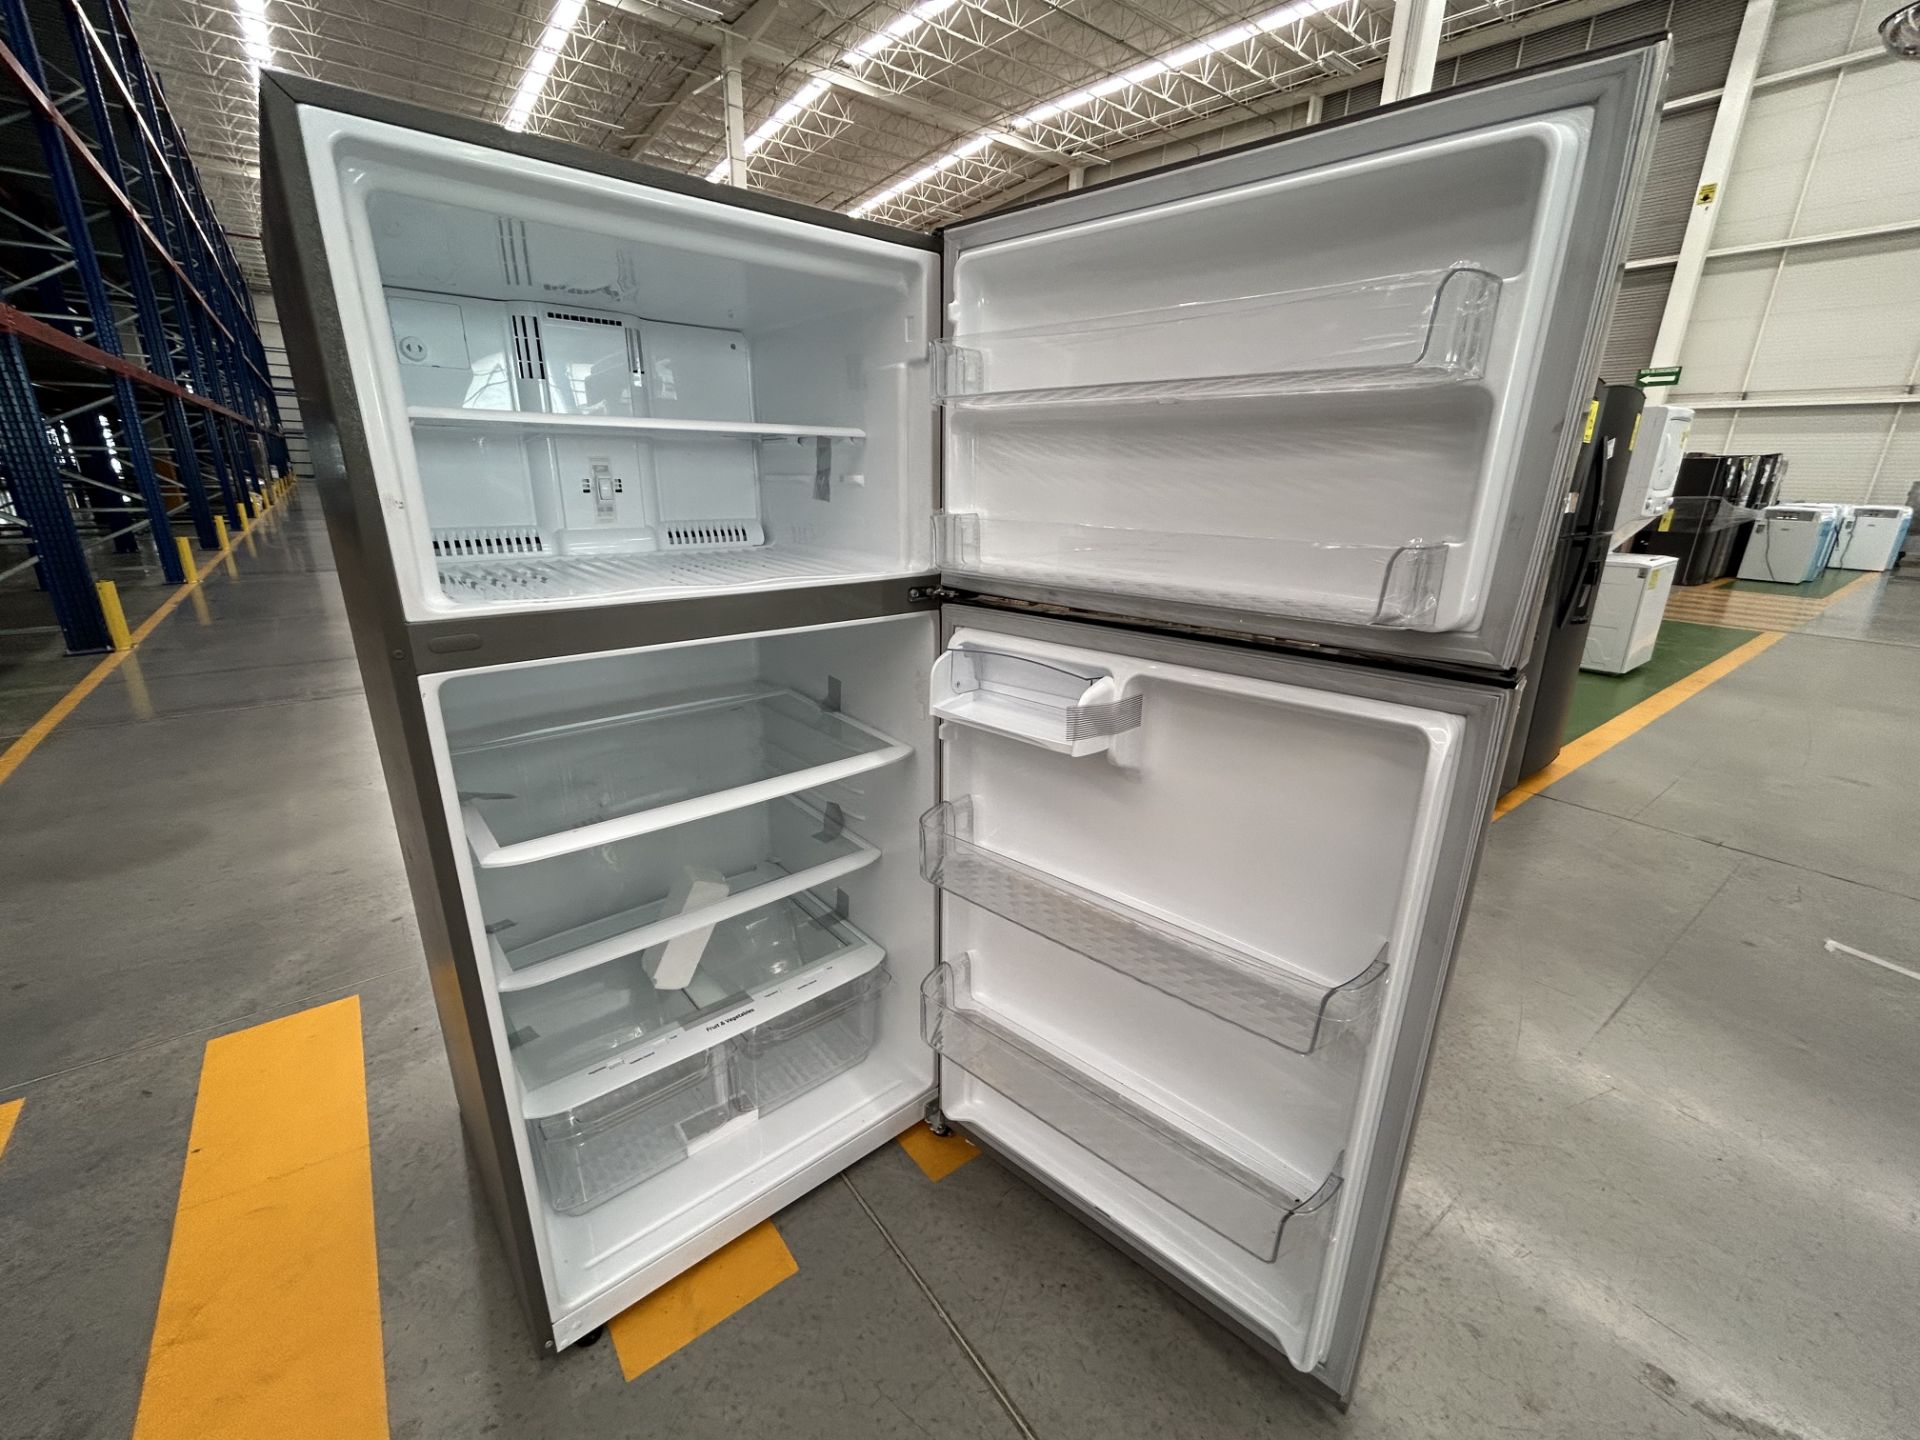 Lote de 1 Refrigerador Marca LG, Modelo GT24BS, Serie 0S368, Color GRIS (No se asegura su funcionam - Image 4 of 5